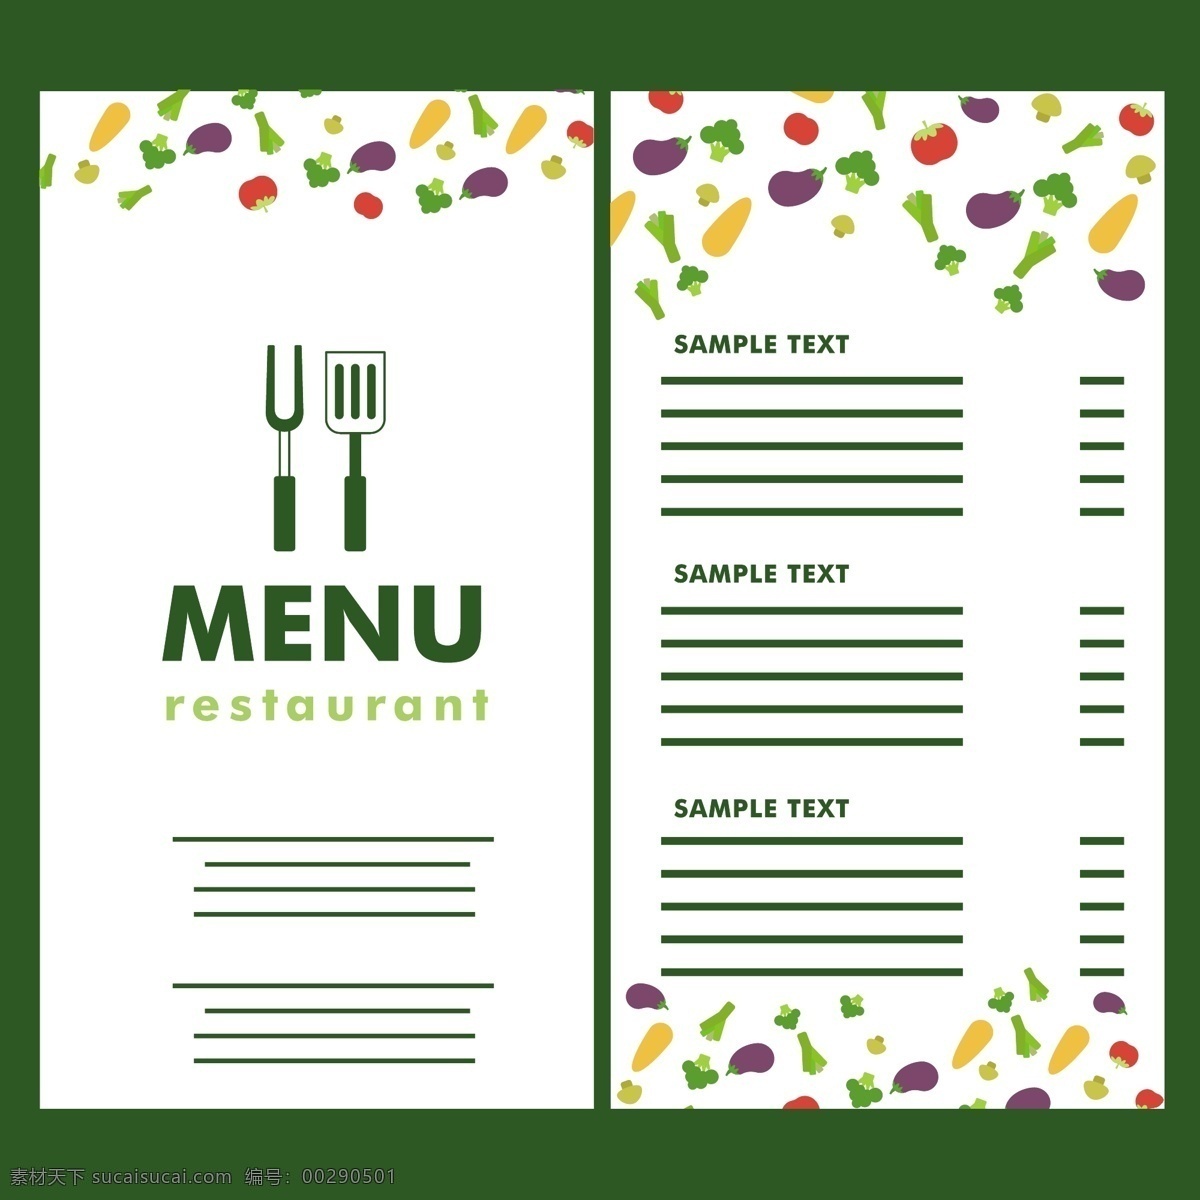 简约 餐厅 菜单 元素 餐厅菜单 简约菜单 菜单设计 菜谱 蔬菜 手绘蔬菜